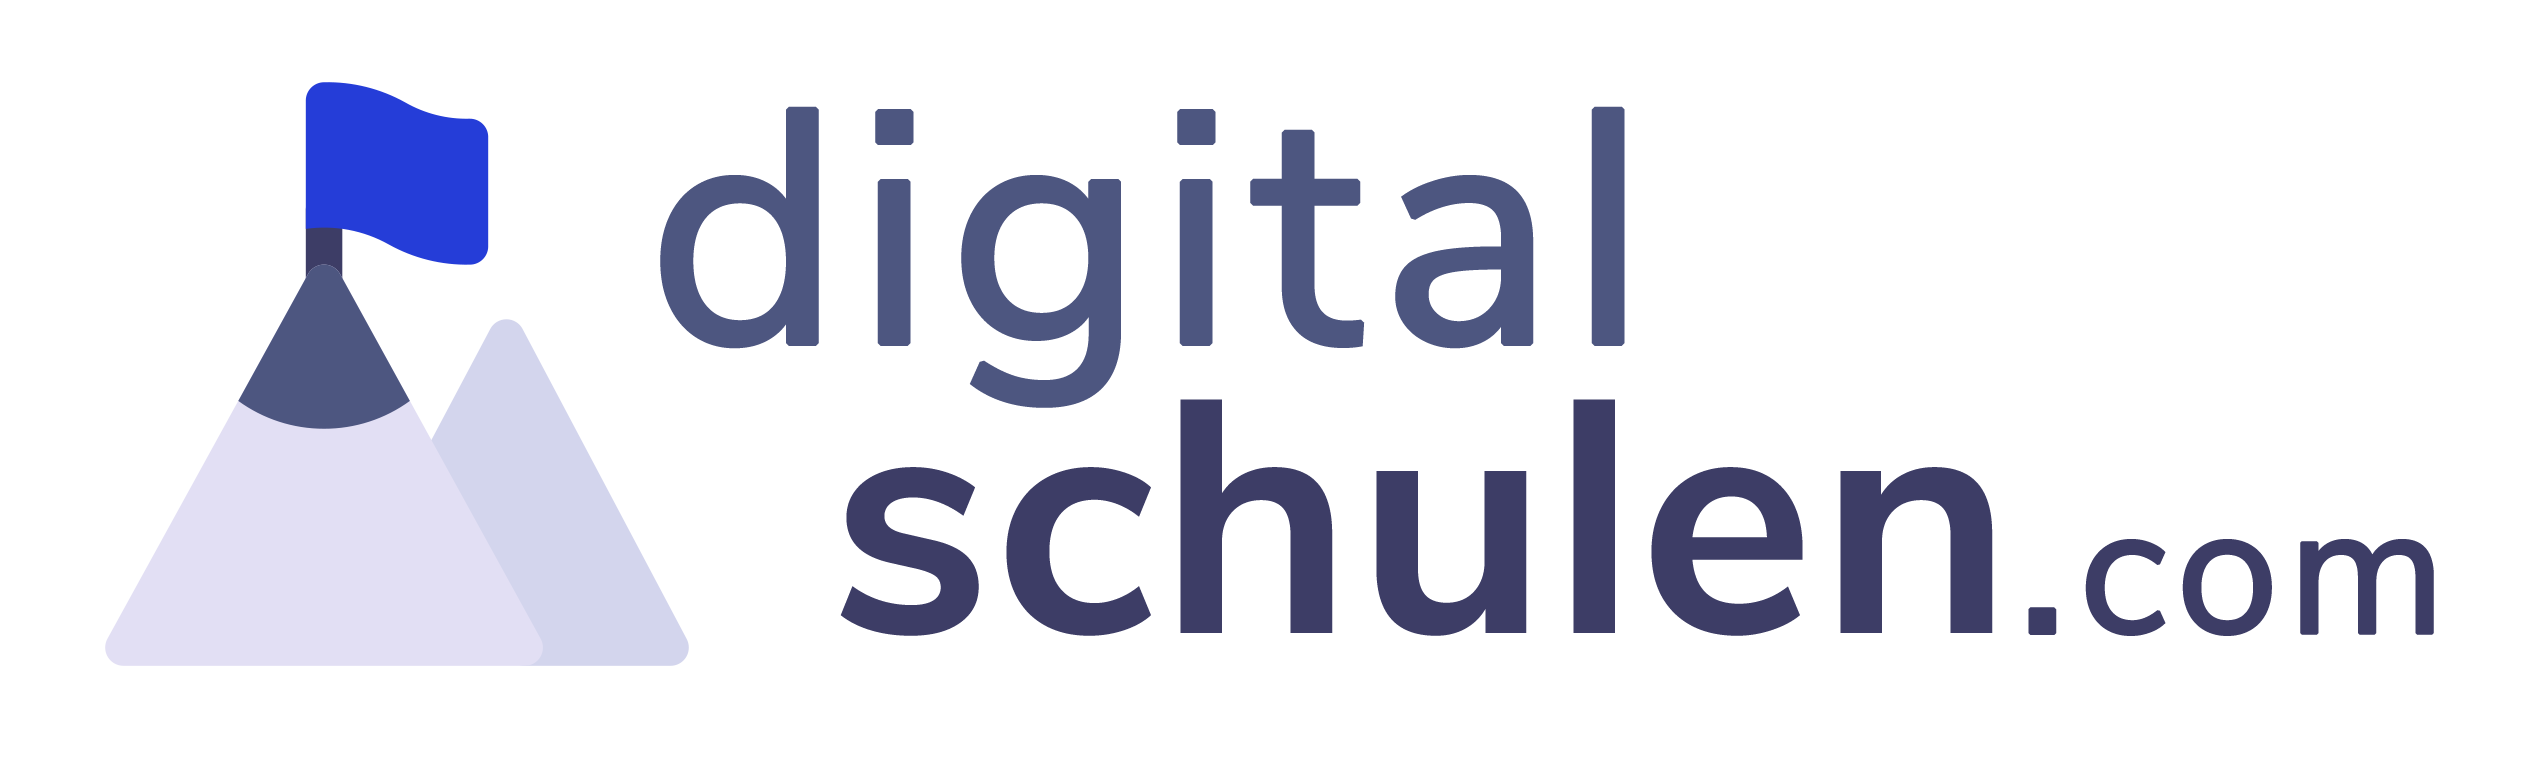 DigitalSchulen.com Logo